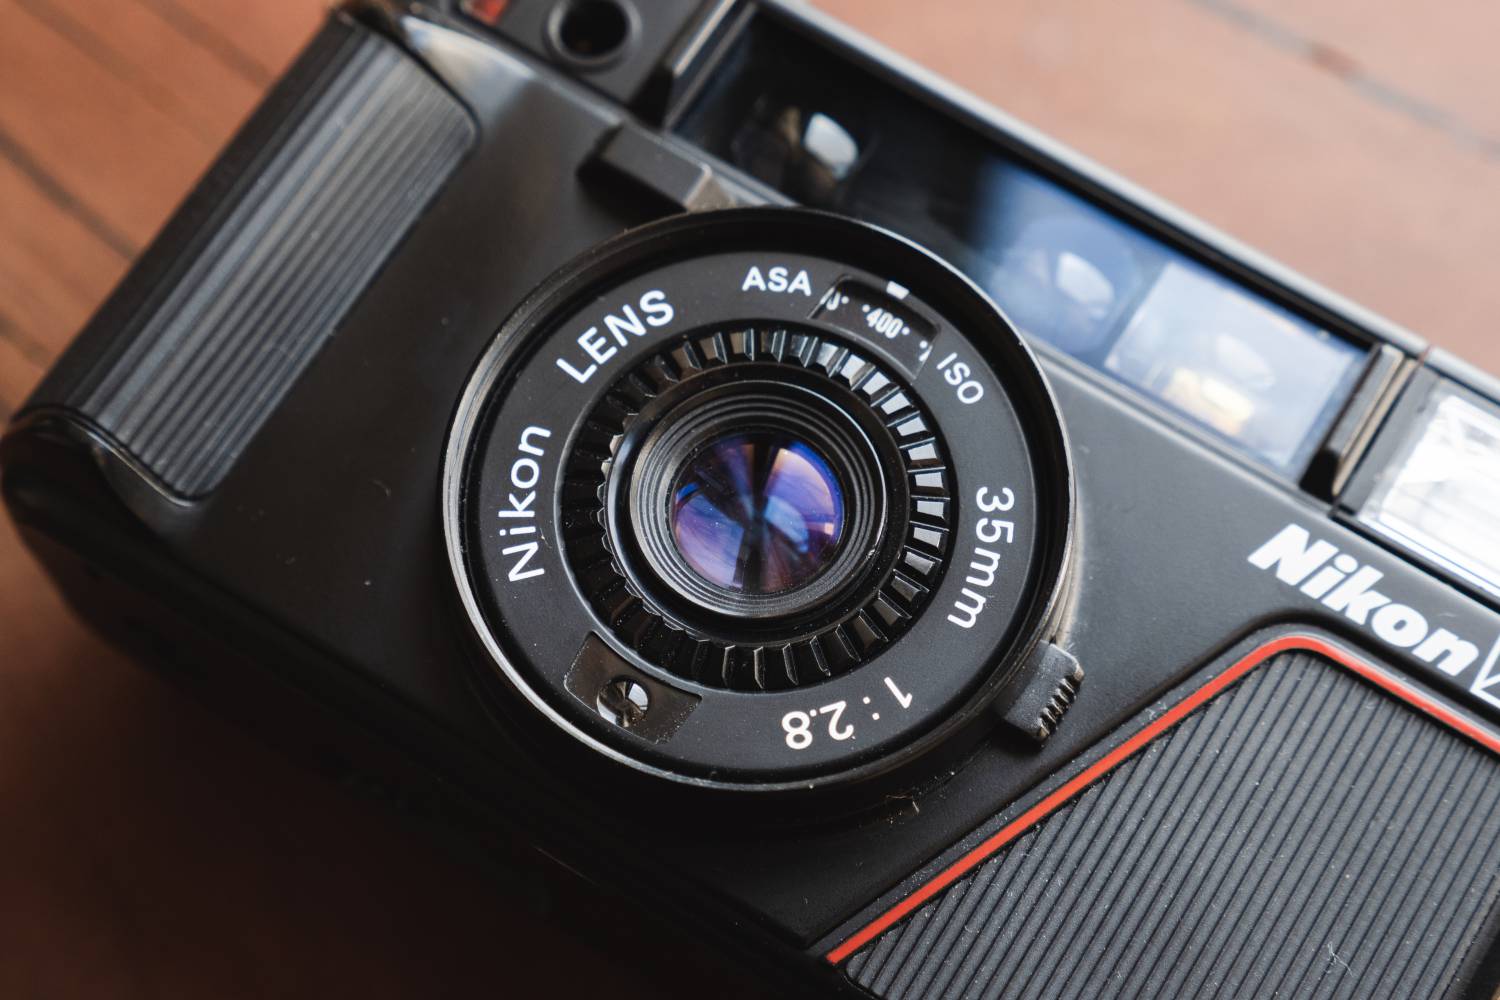 【完動品】Nikon L35 AD コンパクトカメラ フィルムカメラ